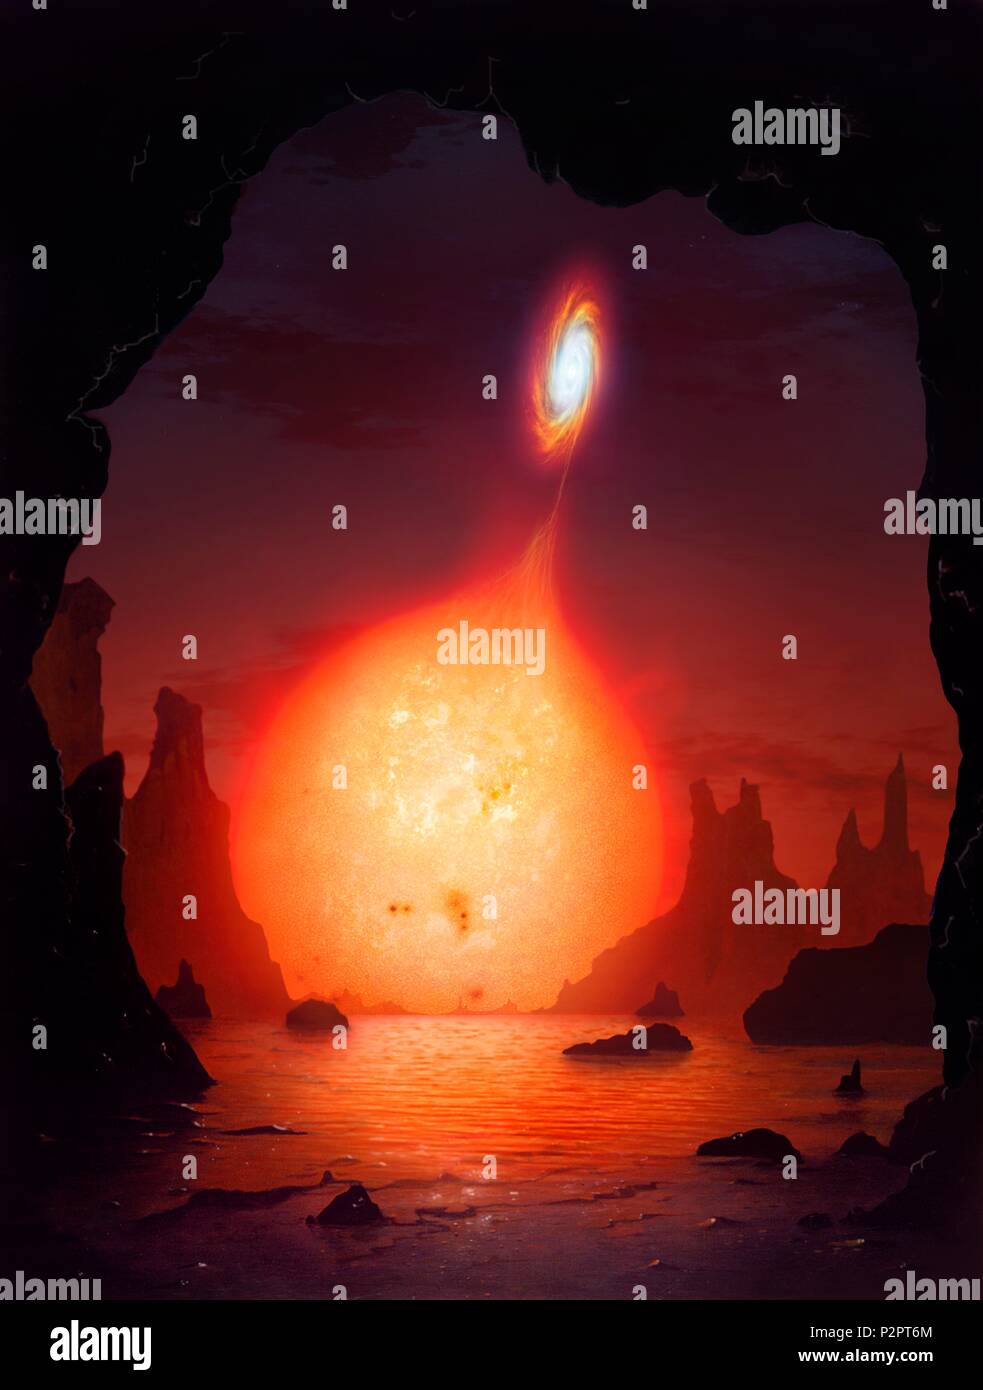 Kunstwerk eines cataclysmic binäre (oder eine Variable) Stern von einer Höhle auf einem nahe gelegenen Planeten gesehen. Stockfoto